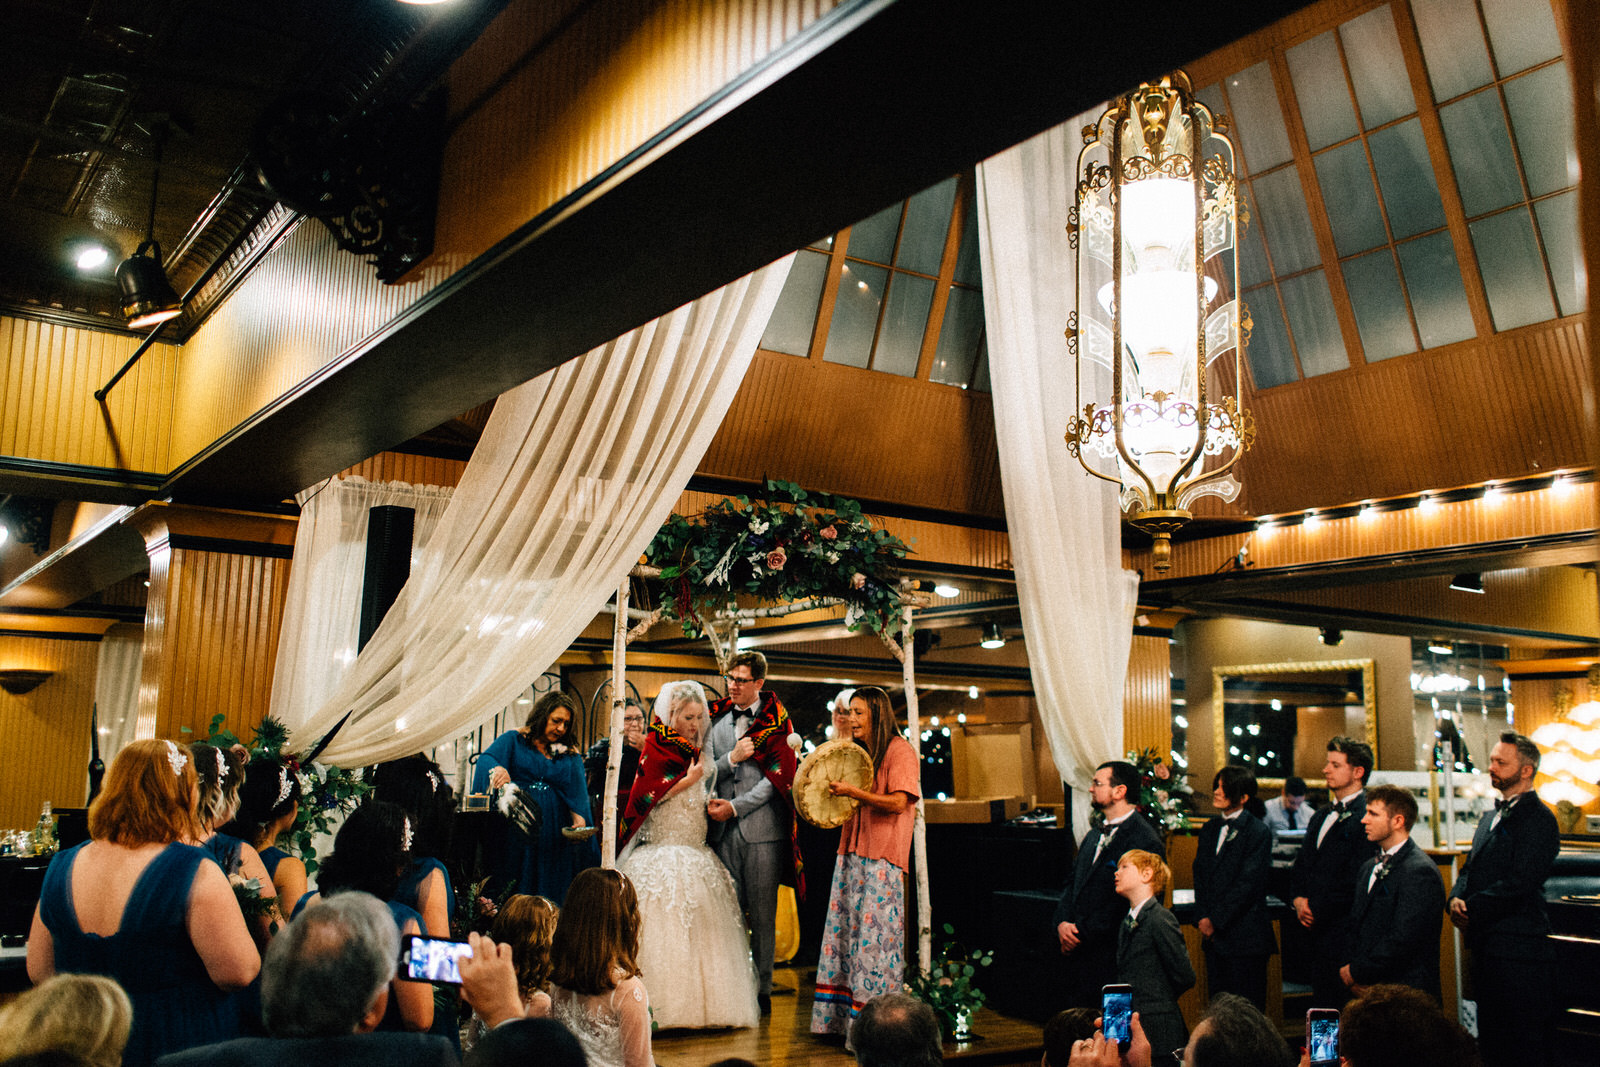 union cafe wedding seattle washington feminist photographer kendall shea night indoor ceremony reception